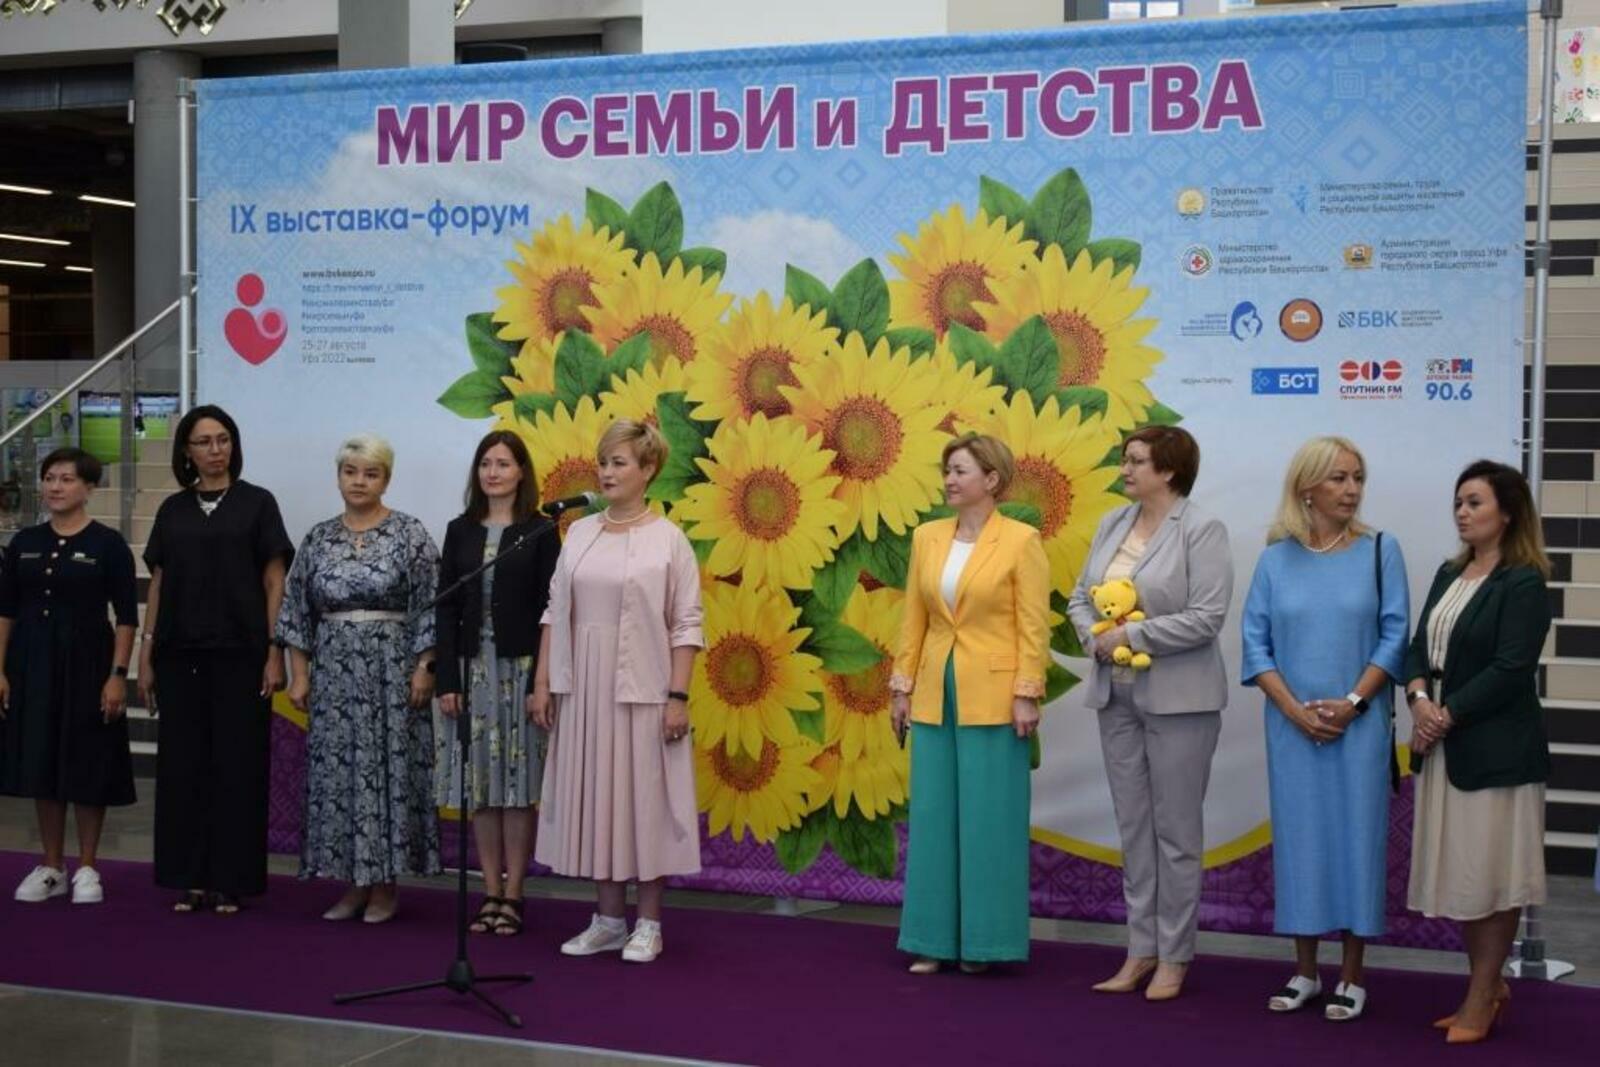 пресс-служба правительства РБ  В Уфе открылся форум «Мир семьи и детства»